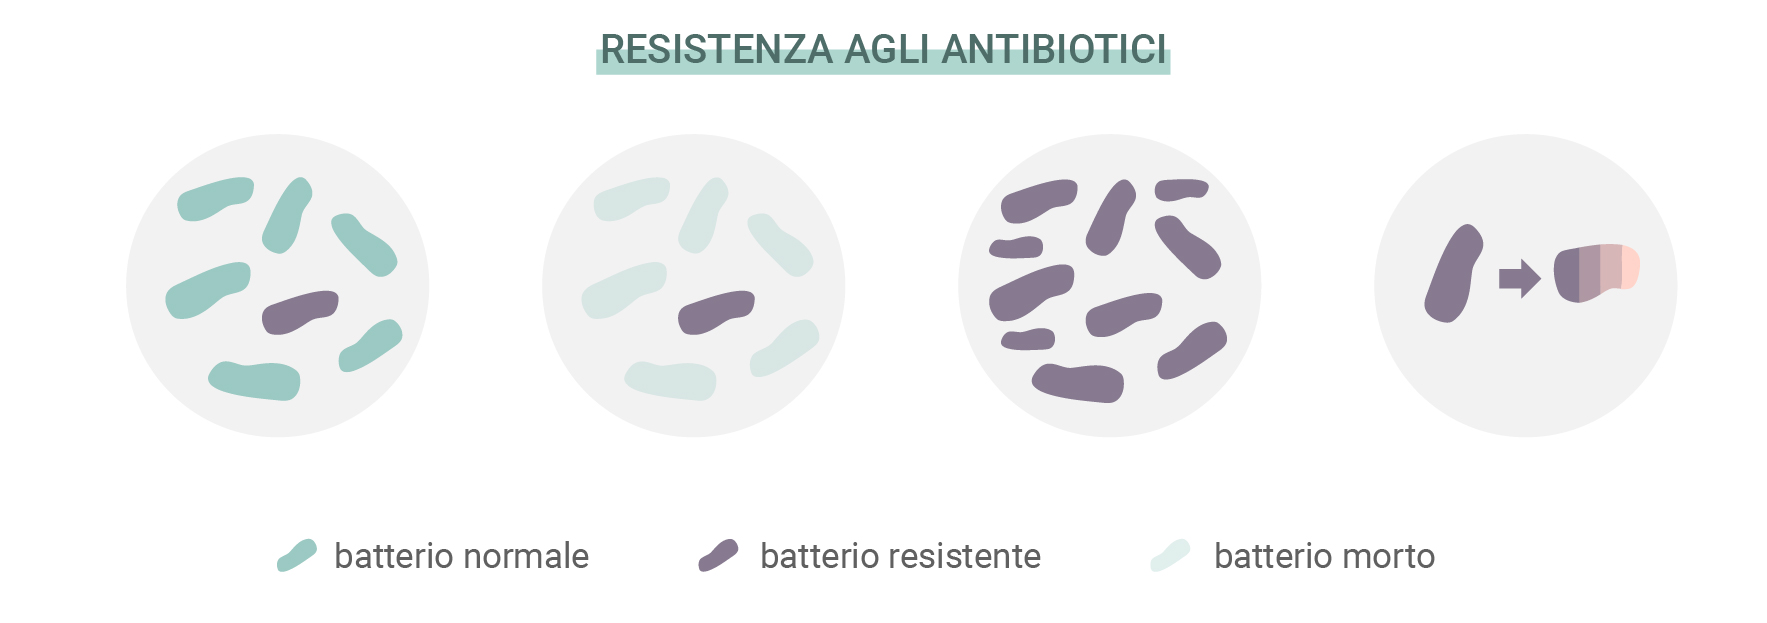 Cos’è la resistenza agli antibiotici?